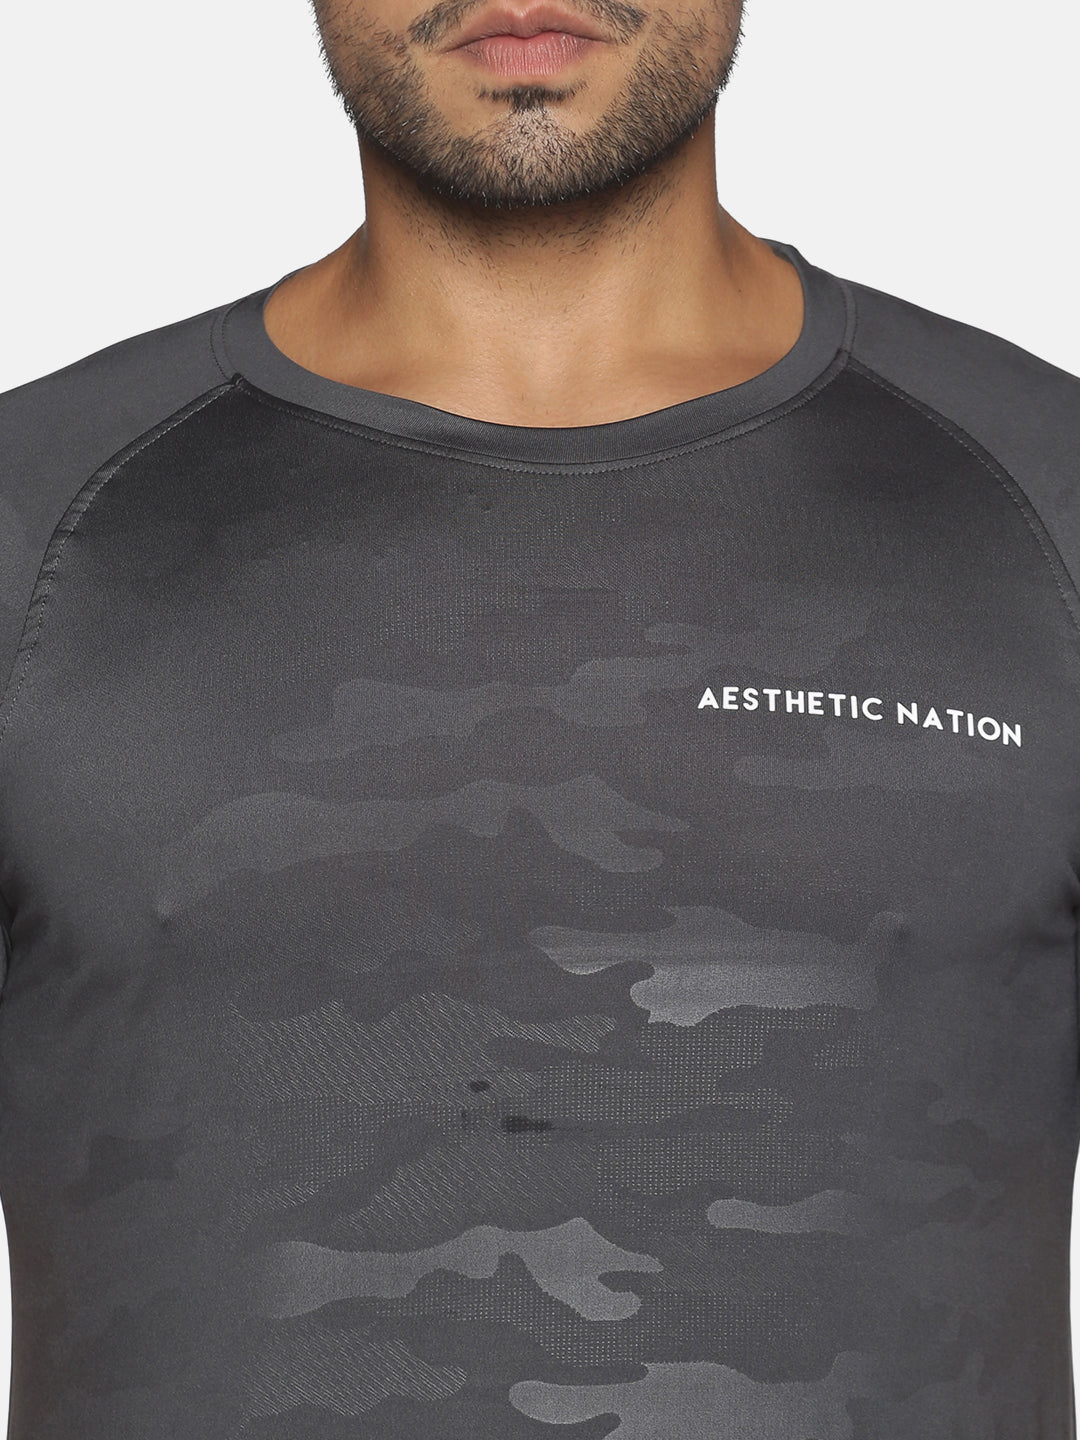 Apex Camo Tshirt T-shirt - AestheticNation